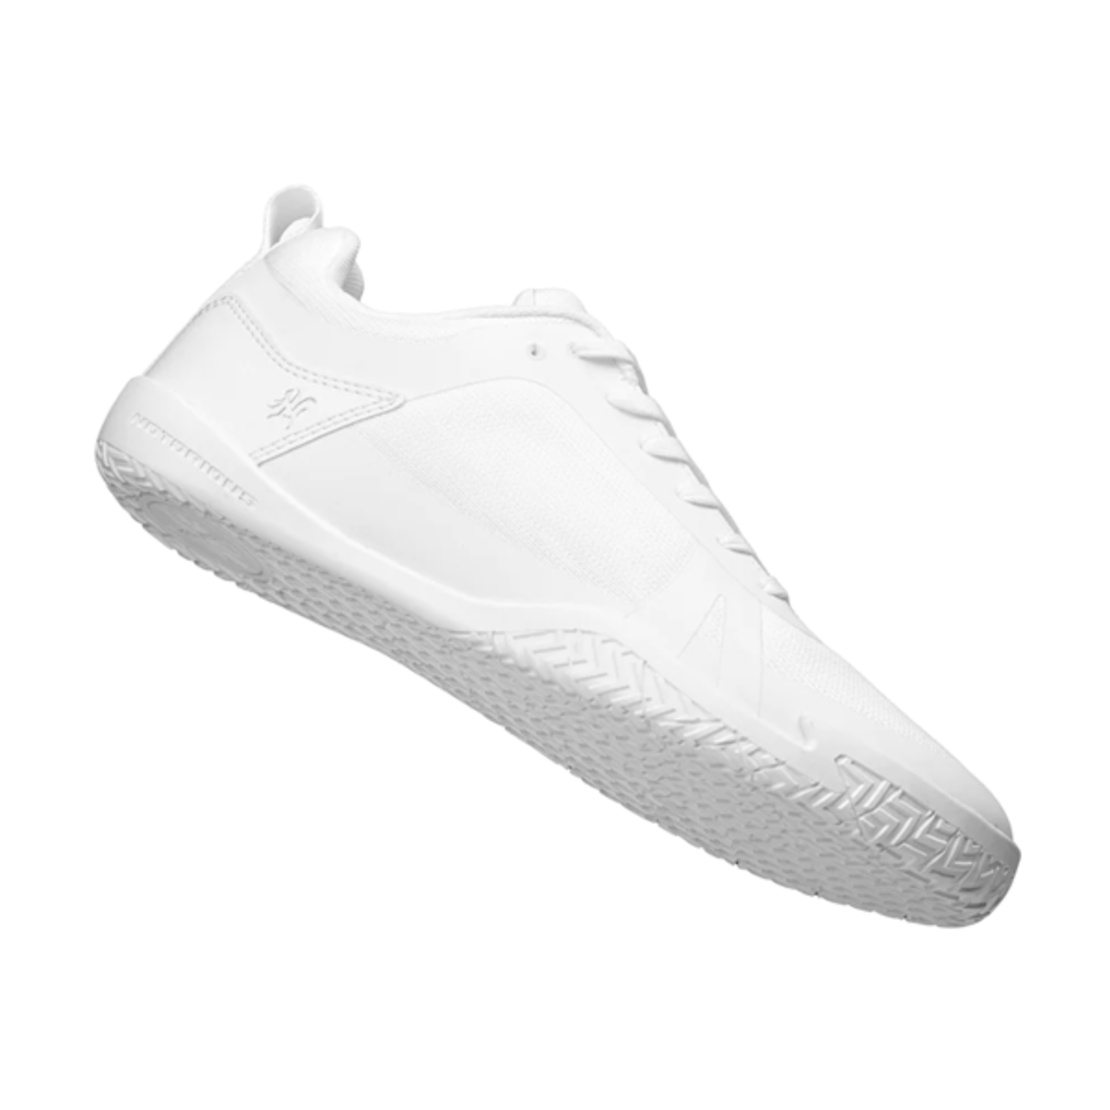 נעלי פאוורליפטינג  - NOTORIOUS LIFT RADIX PURE WHITE